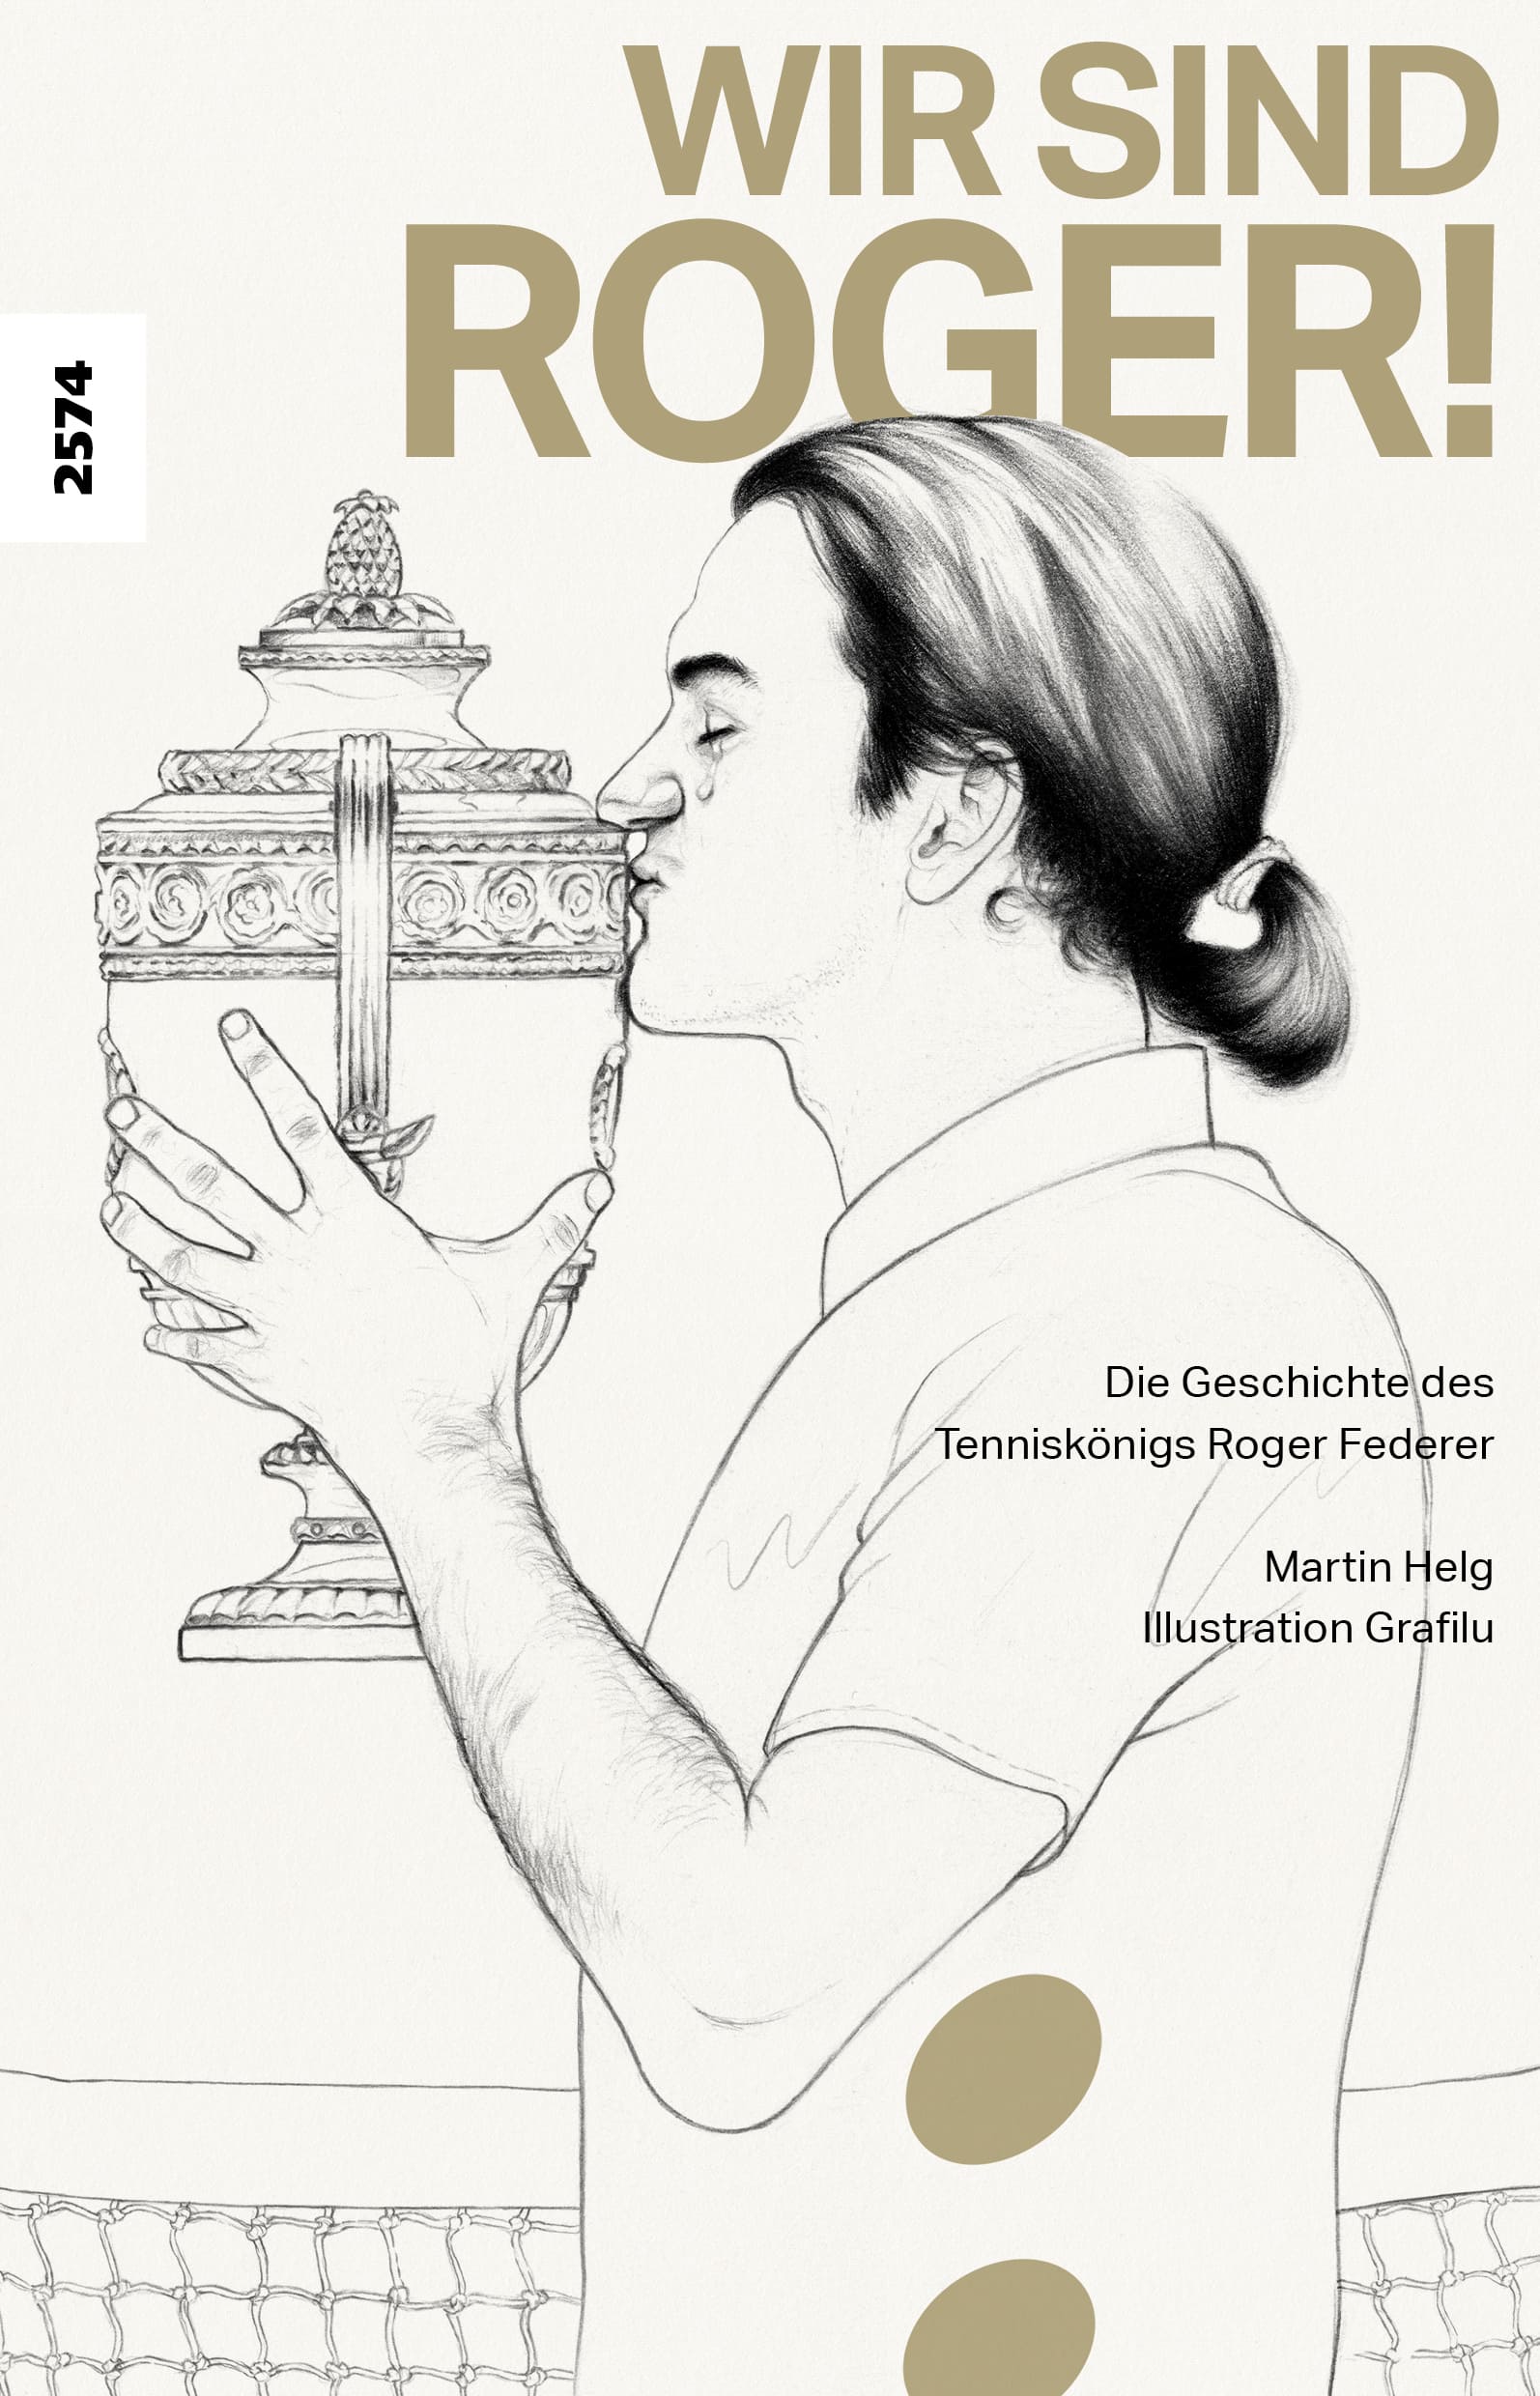 Wir sind Roger! Die Geschichte des Tenniskoenigs Roger Federer, ein Buch von Martin Helg, Illustration Grafilu, SJW Verlag